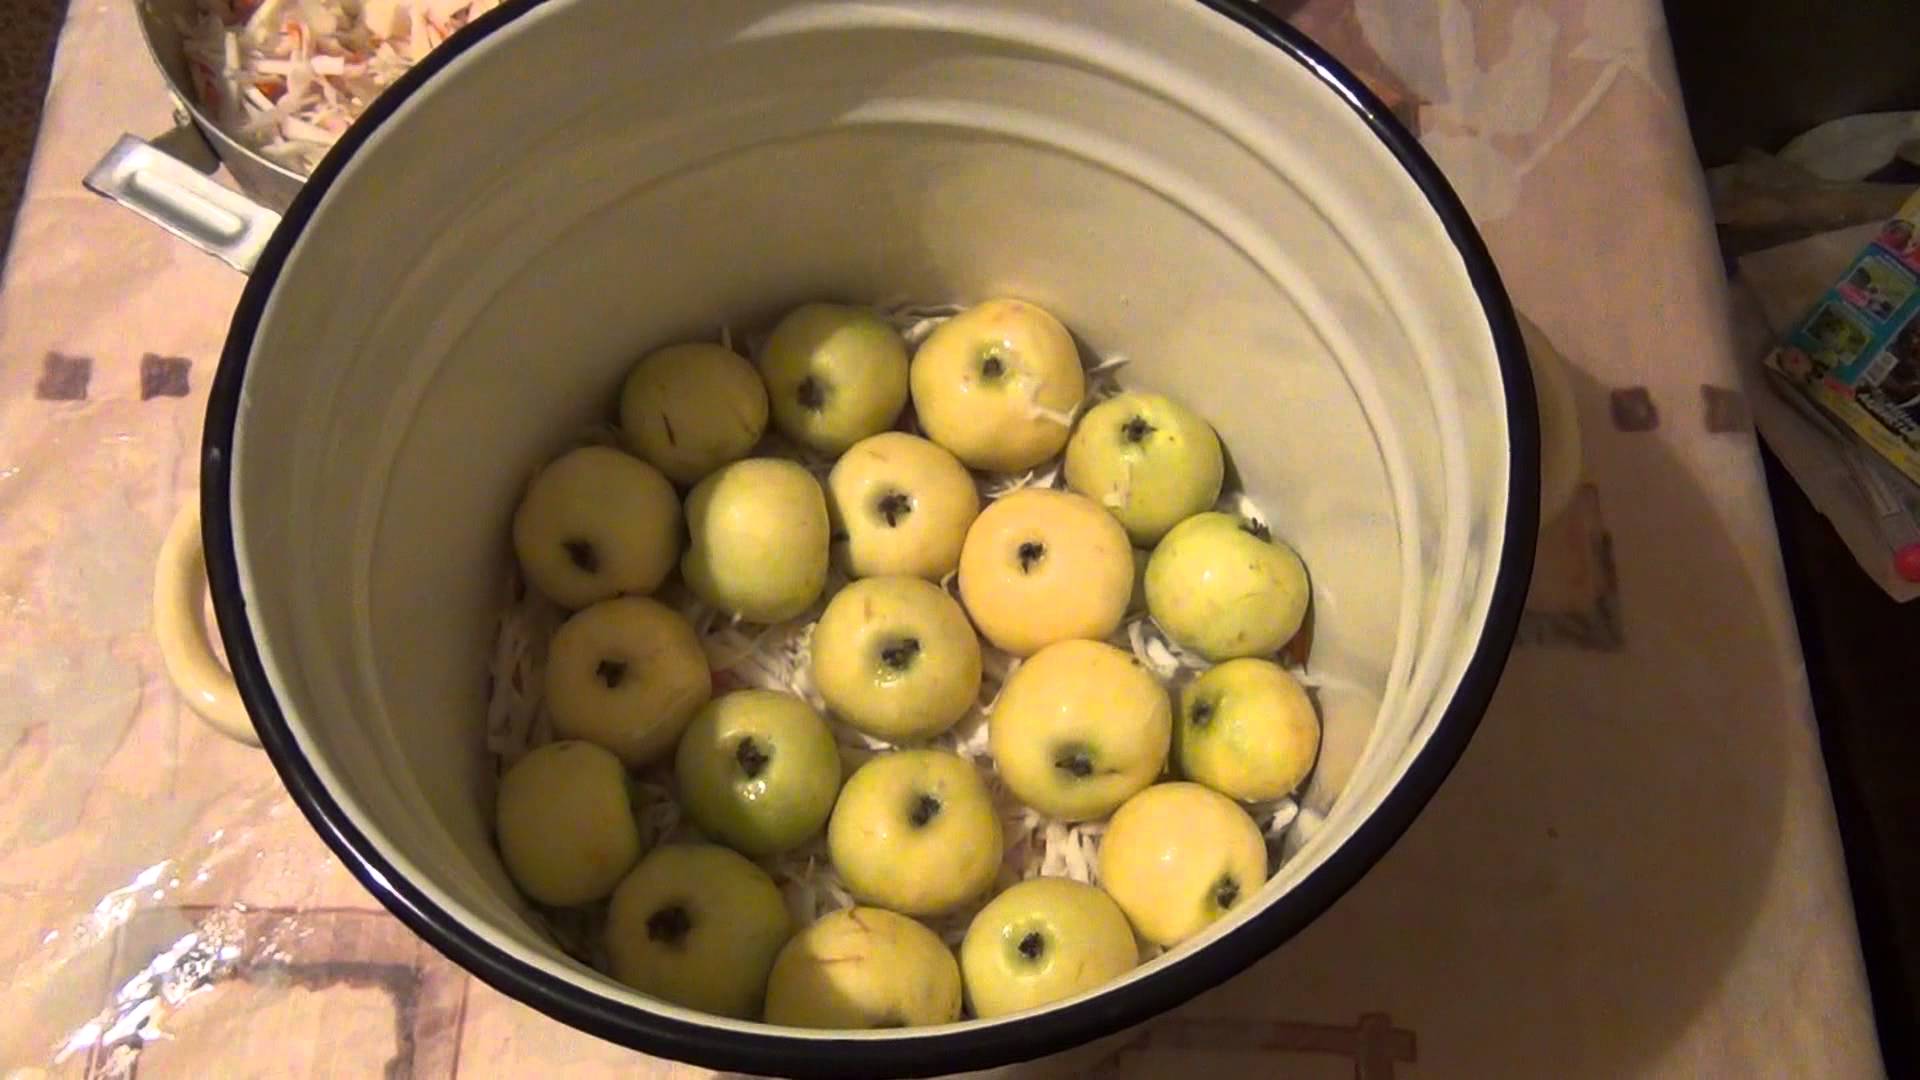 Моченые яблоки: состав, польза, вред, рецепты приготовления